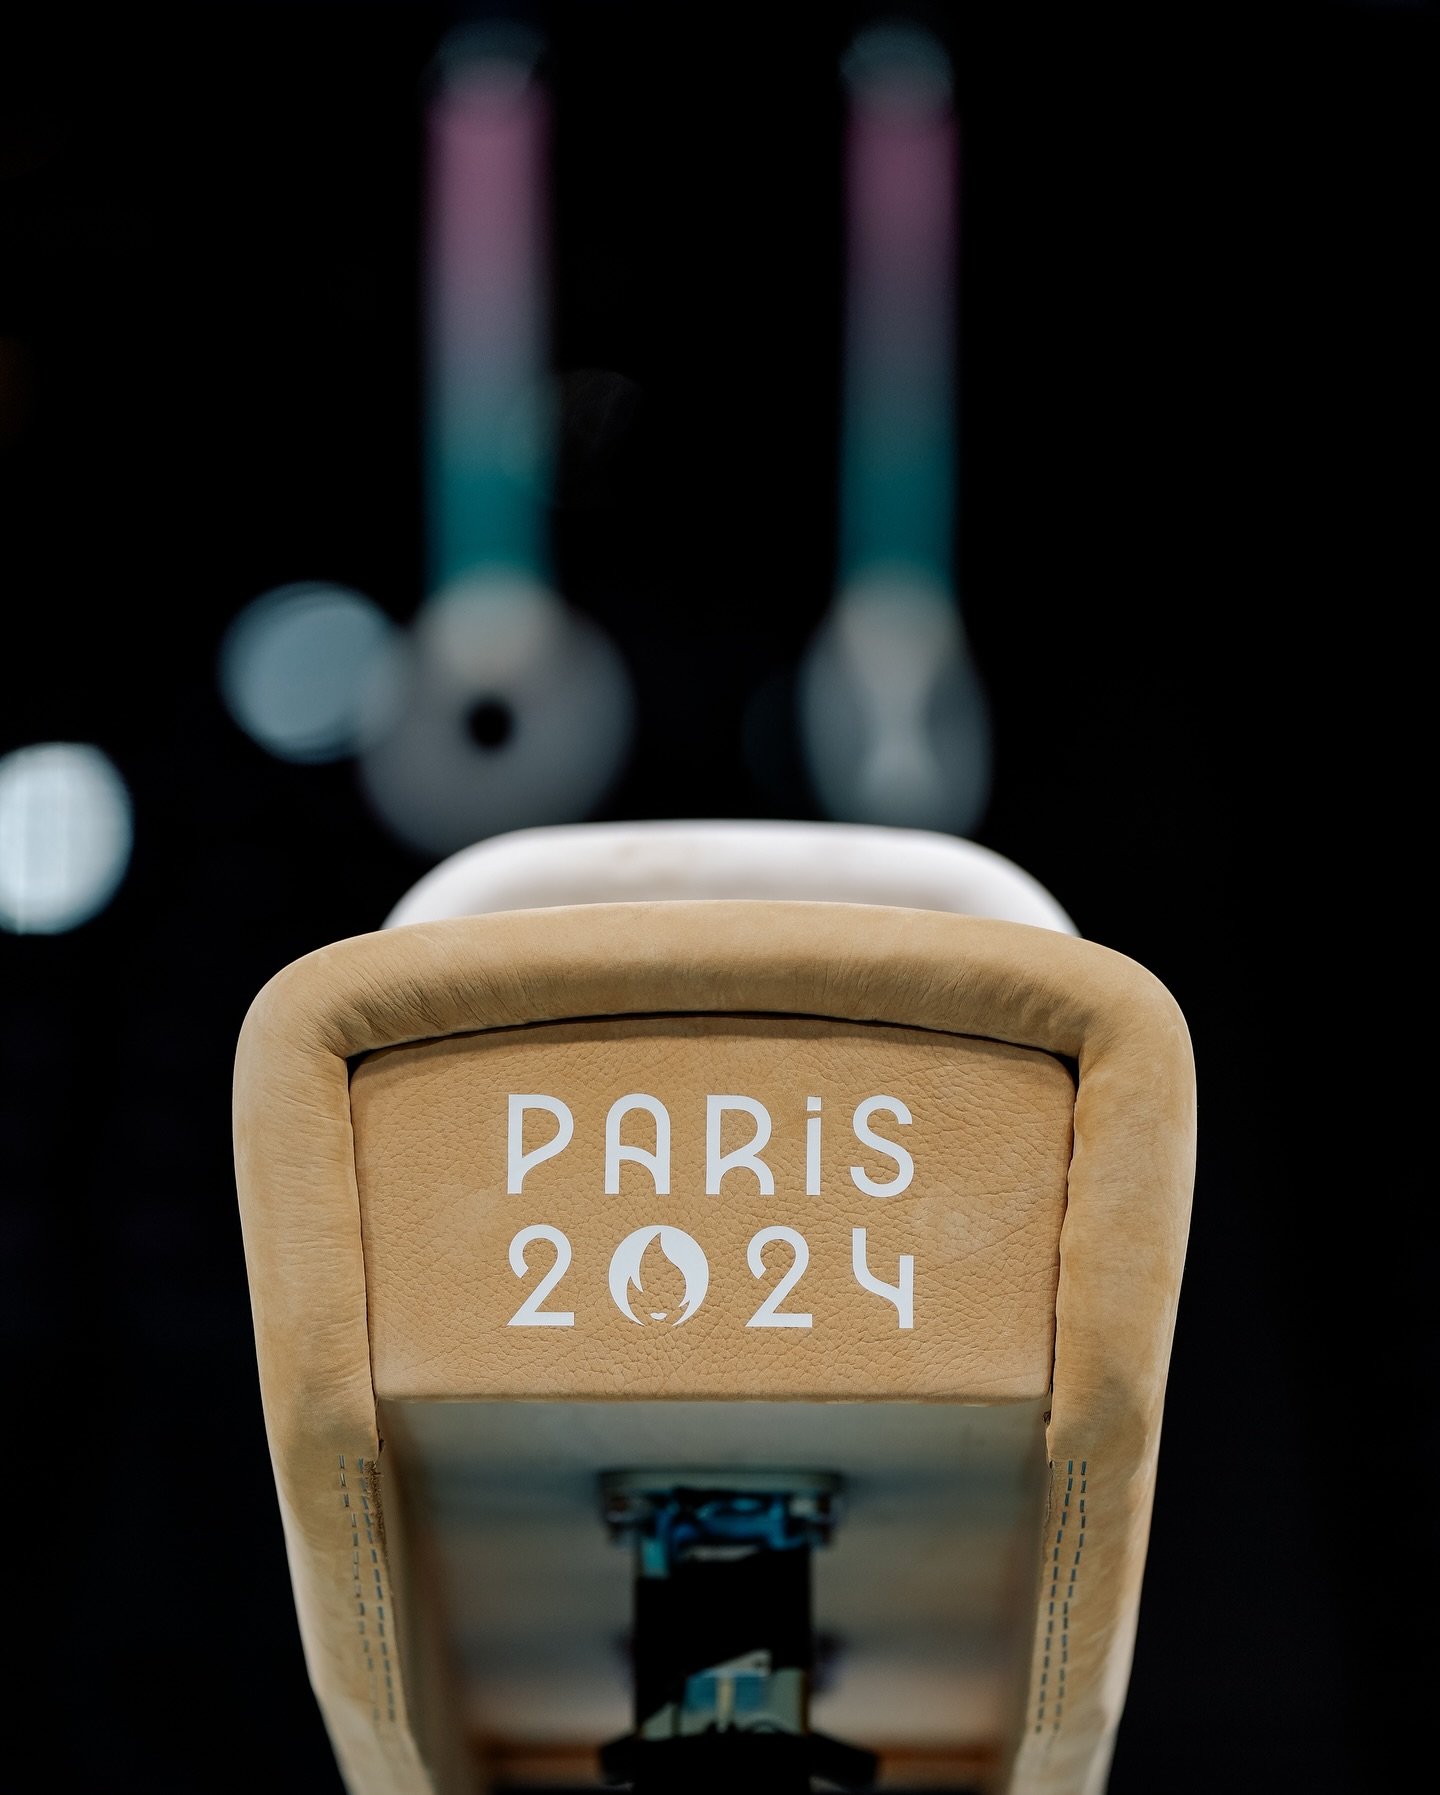 Paris 2024 Reprodução / Instagram Paris 2024